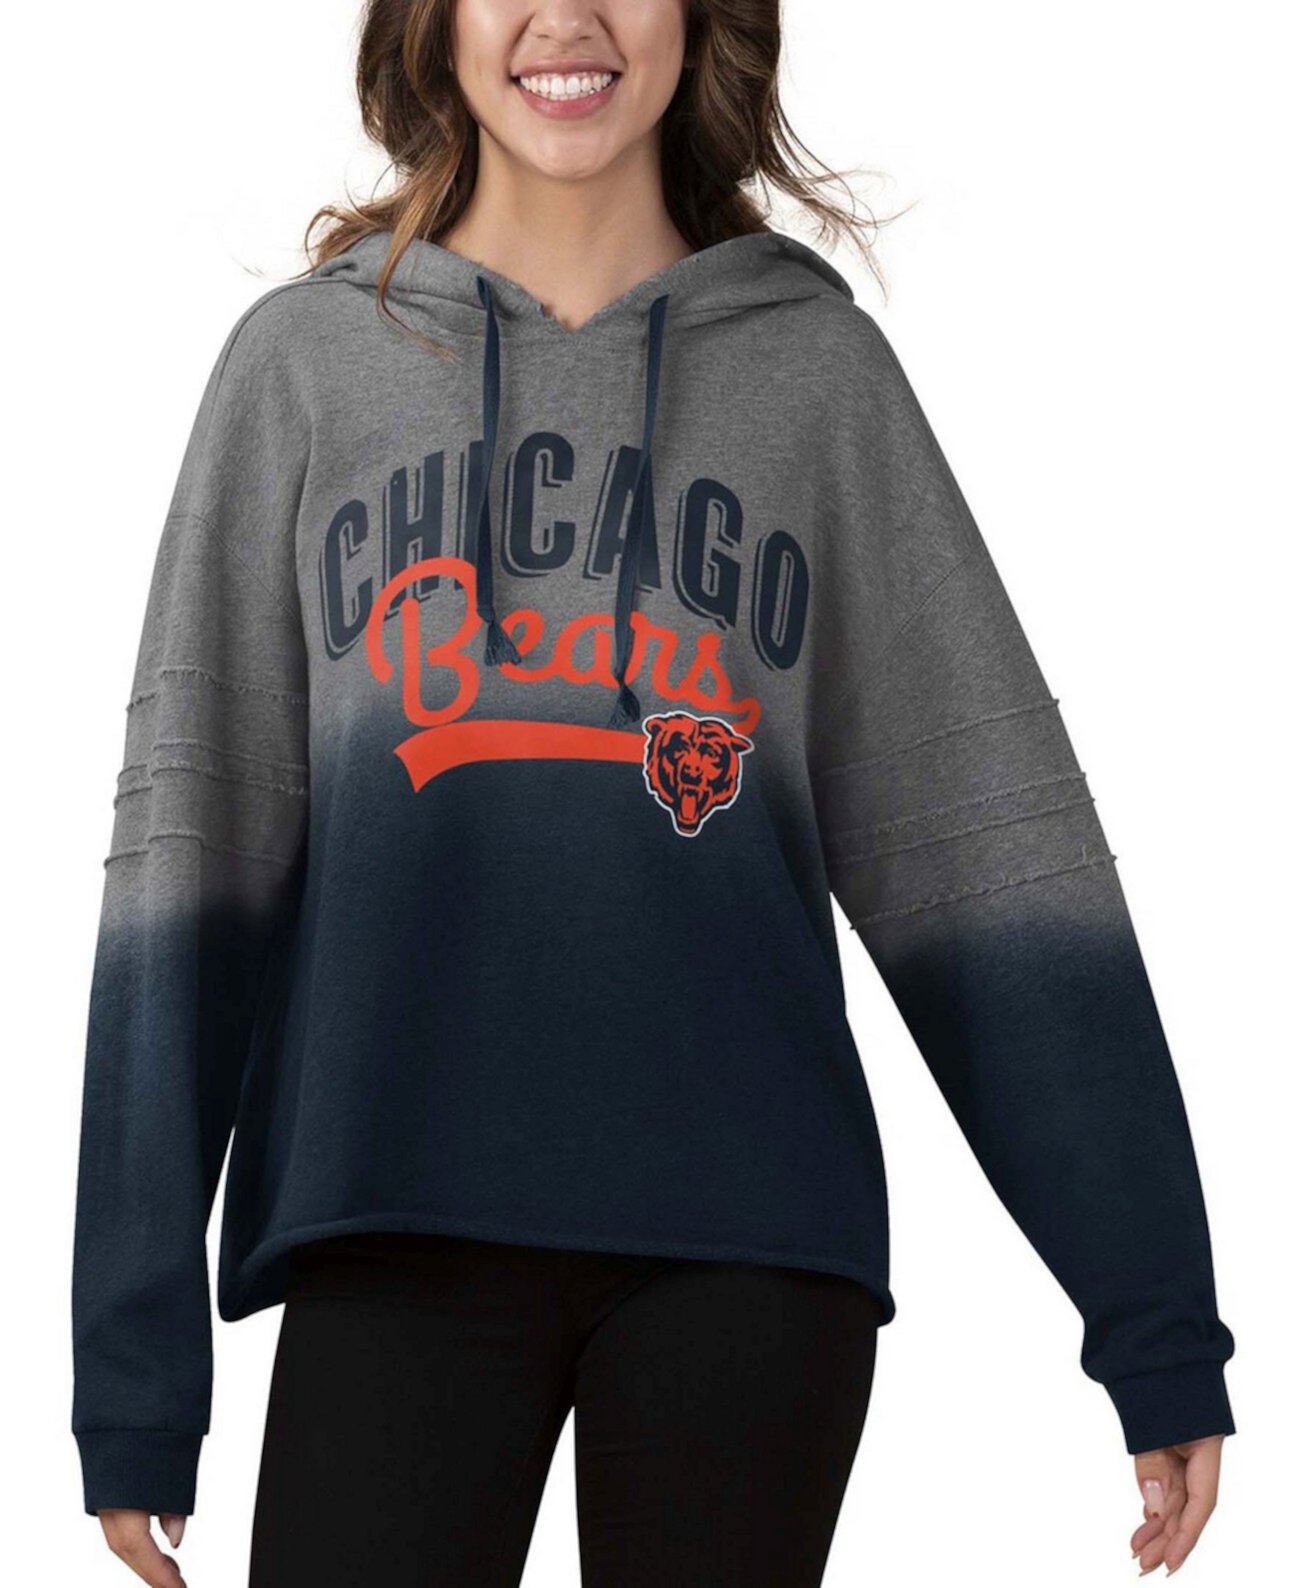 Женский укороченный пуловер с капюшоном в цвете Heather Grey, Navy Chicago Bears Superstar Touch by Alyssa Milano